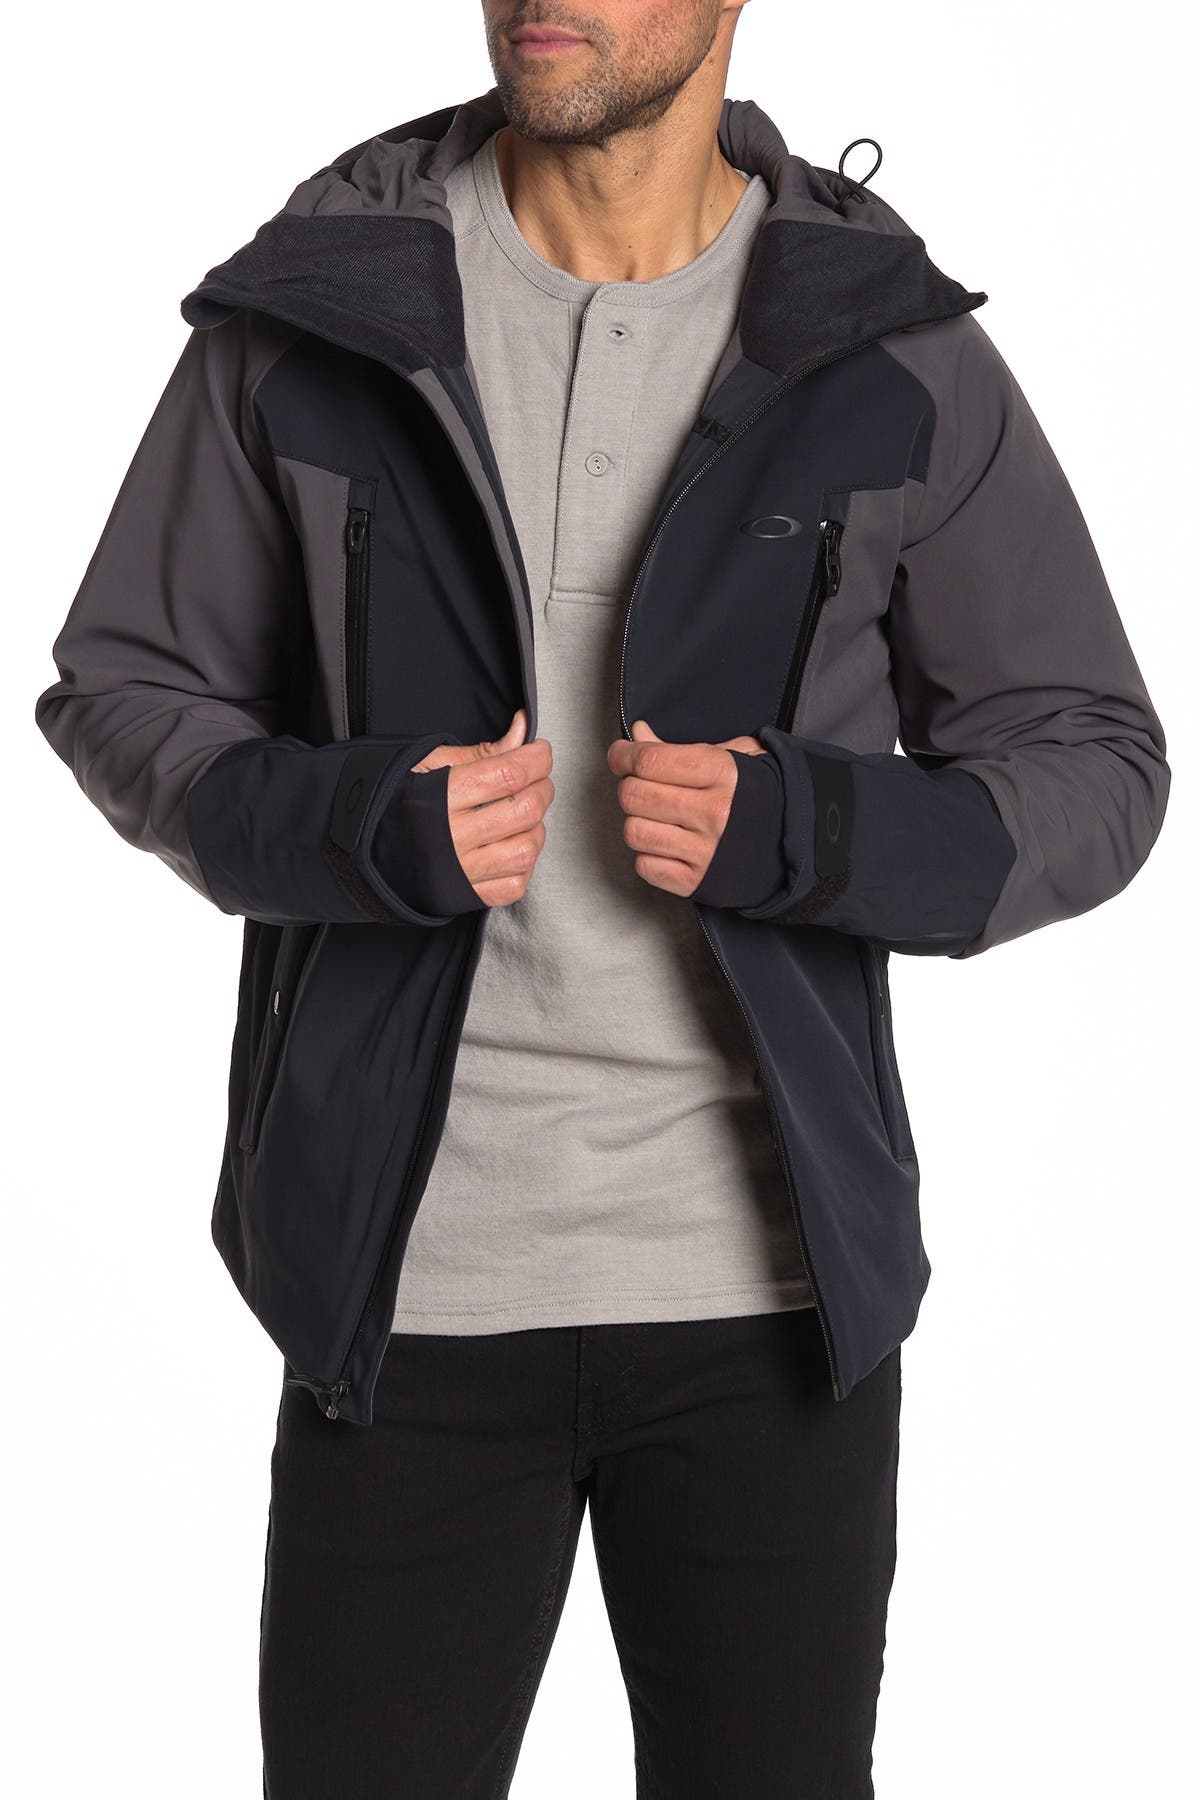 oakley 10k hooded jacket